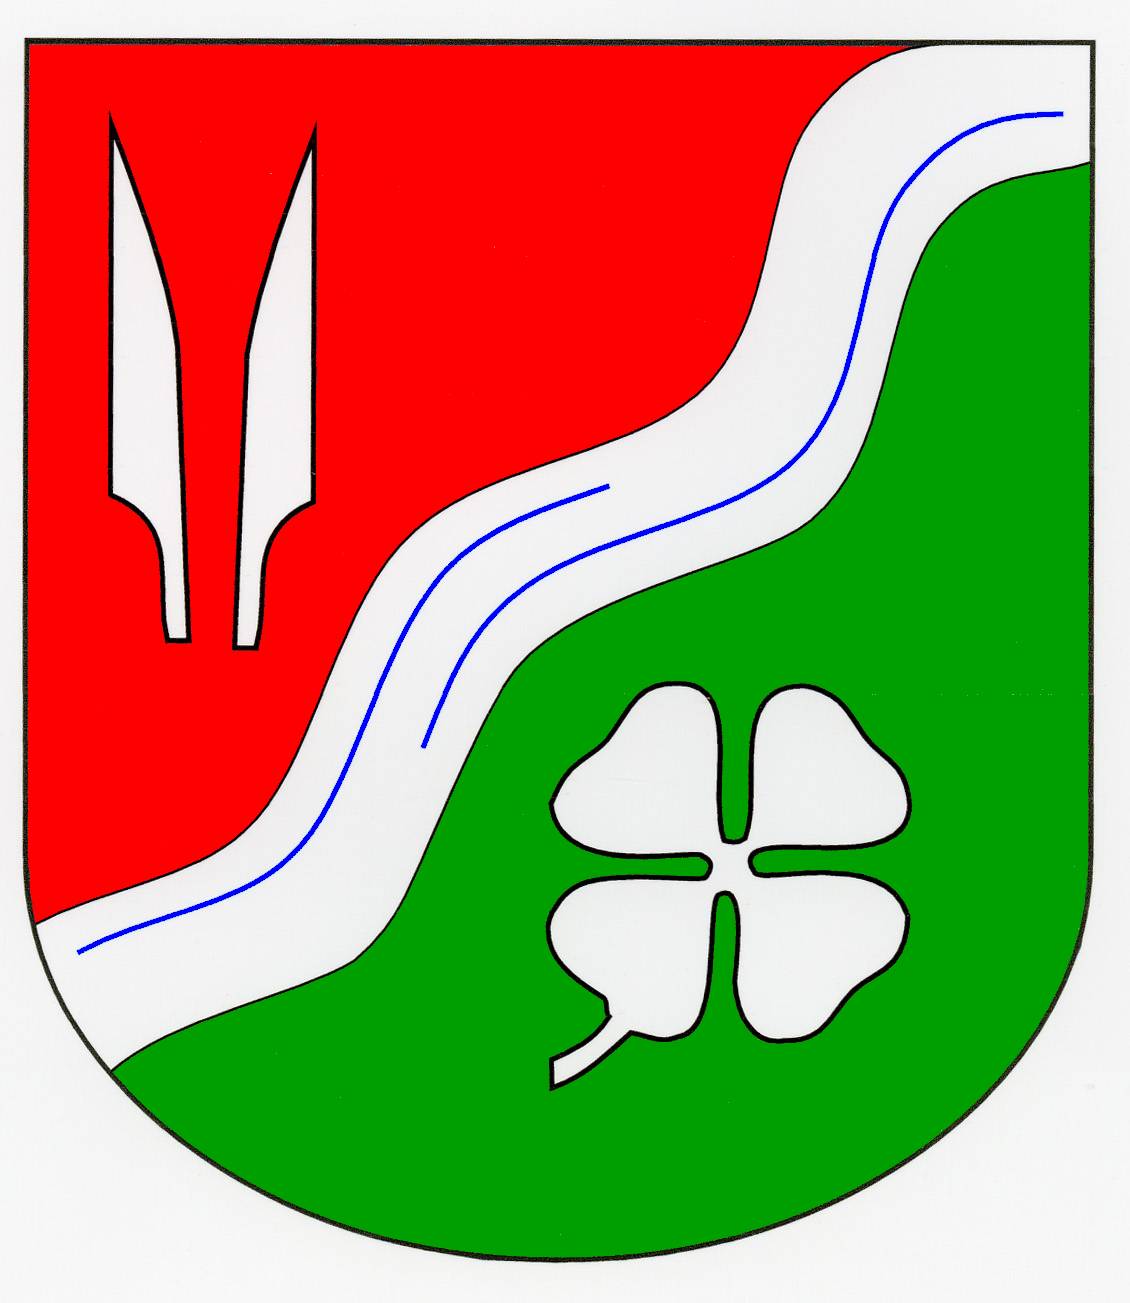 Wappen Gemeinde Düchelsdorf, Kreis Herzogtum Lauenburg